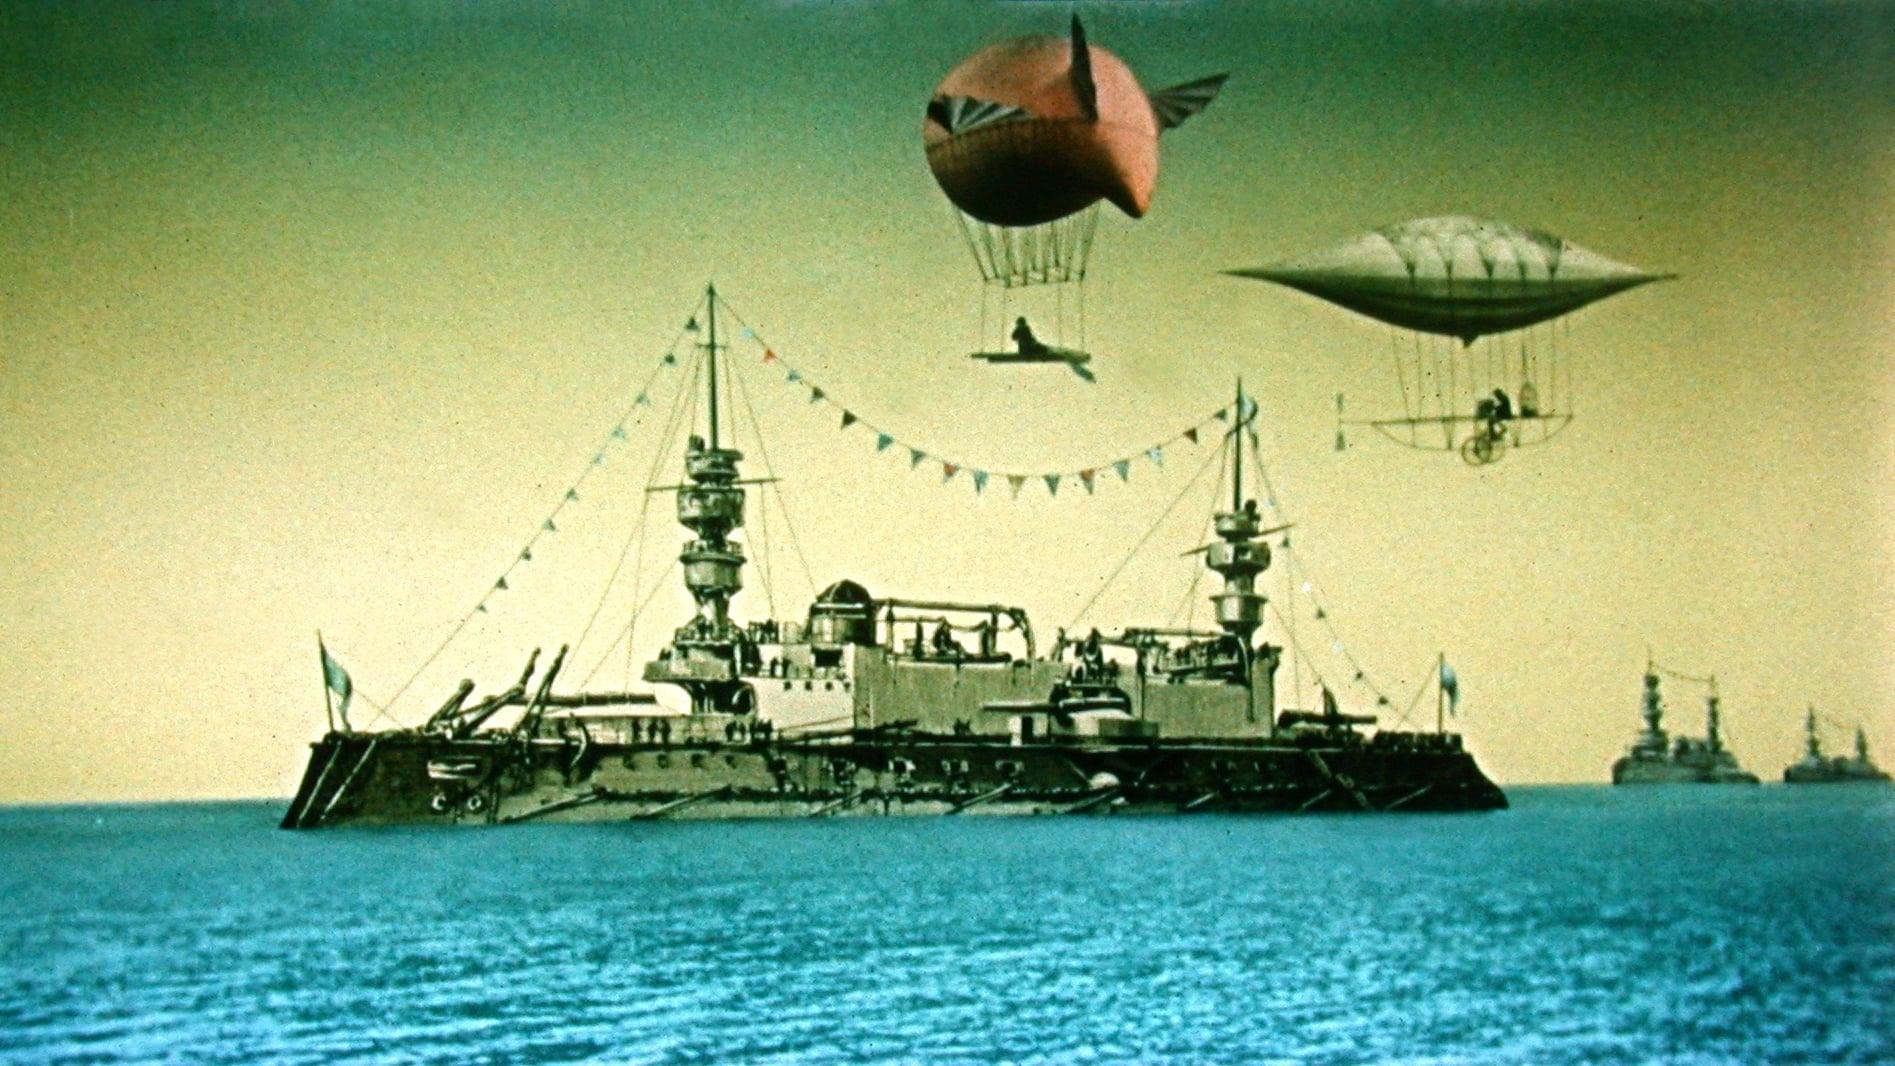 The Stolen Airship backdrop